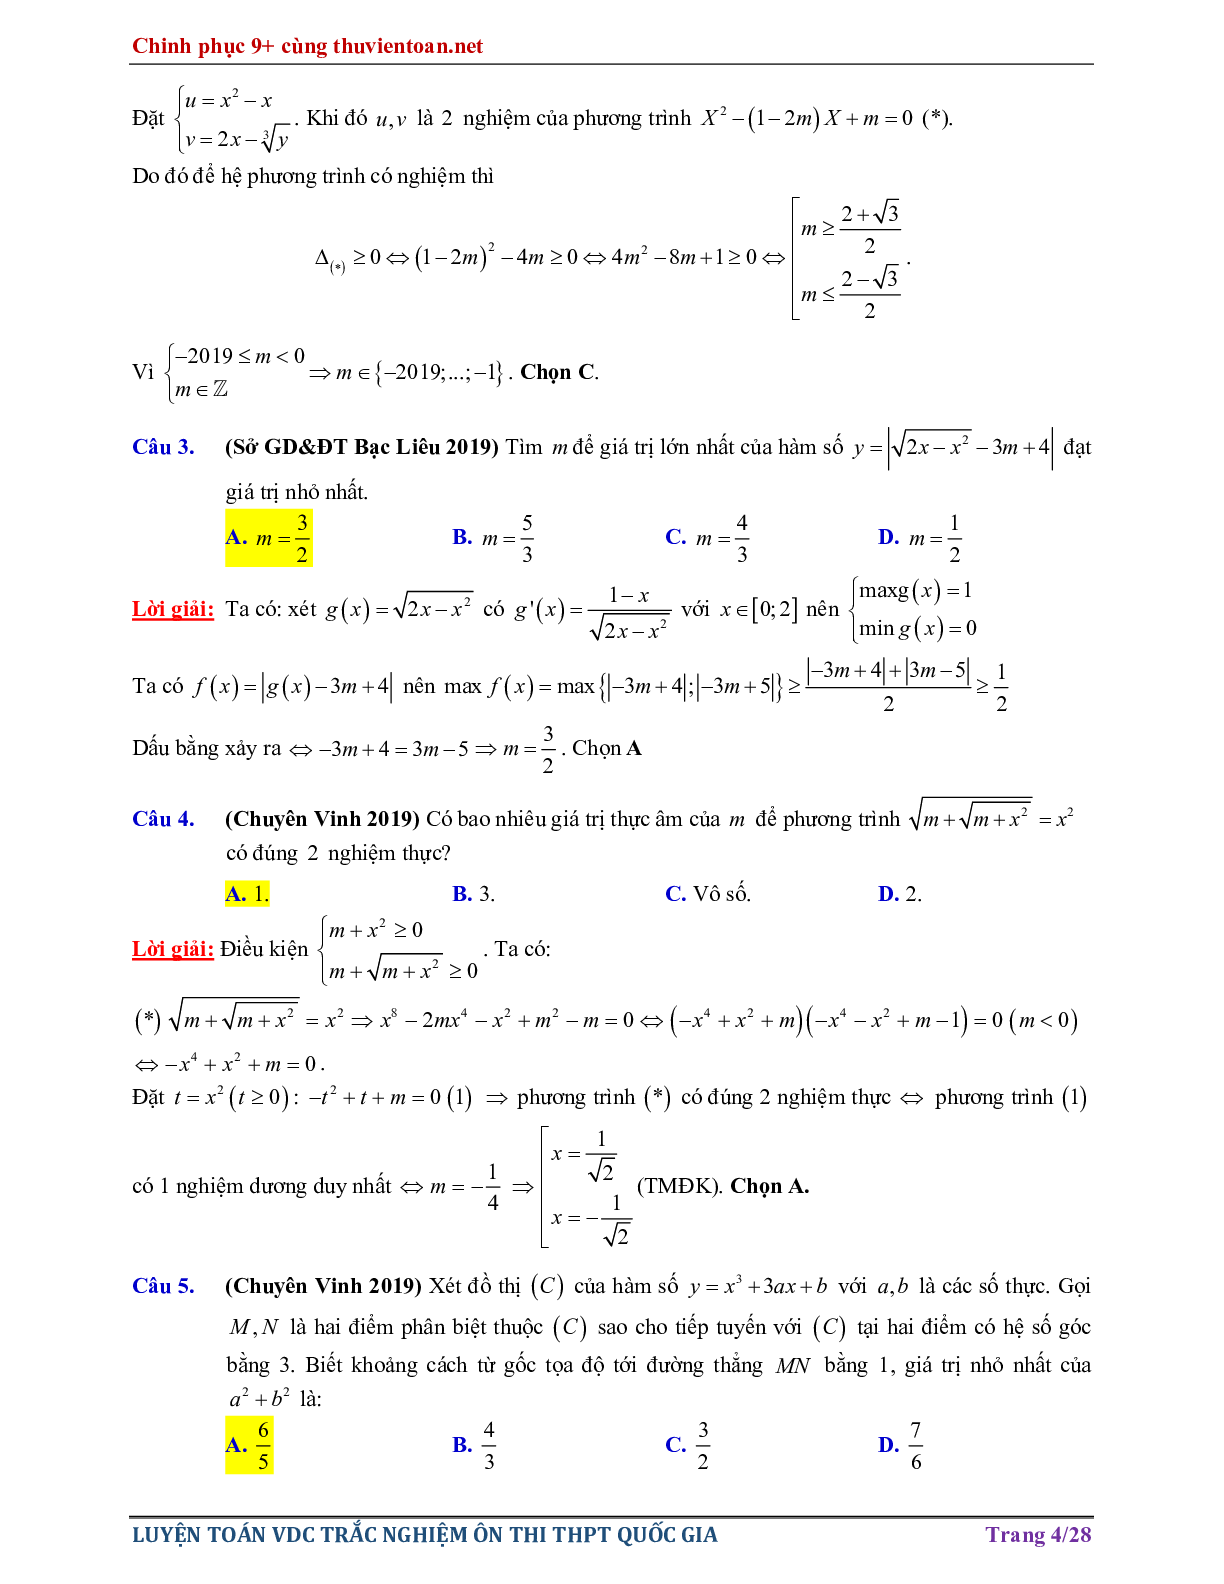 Bài tập Vận dụng cao - Nghiệm của phương trình hàm hợp ôn thi THPTQG năm 2021 (trang 4)